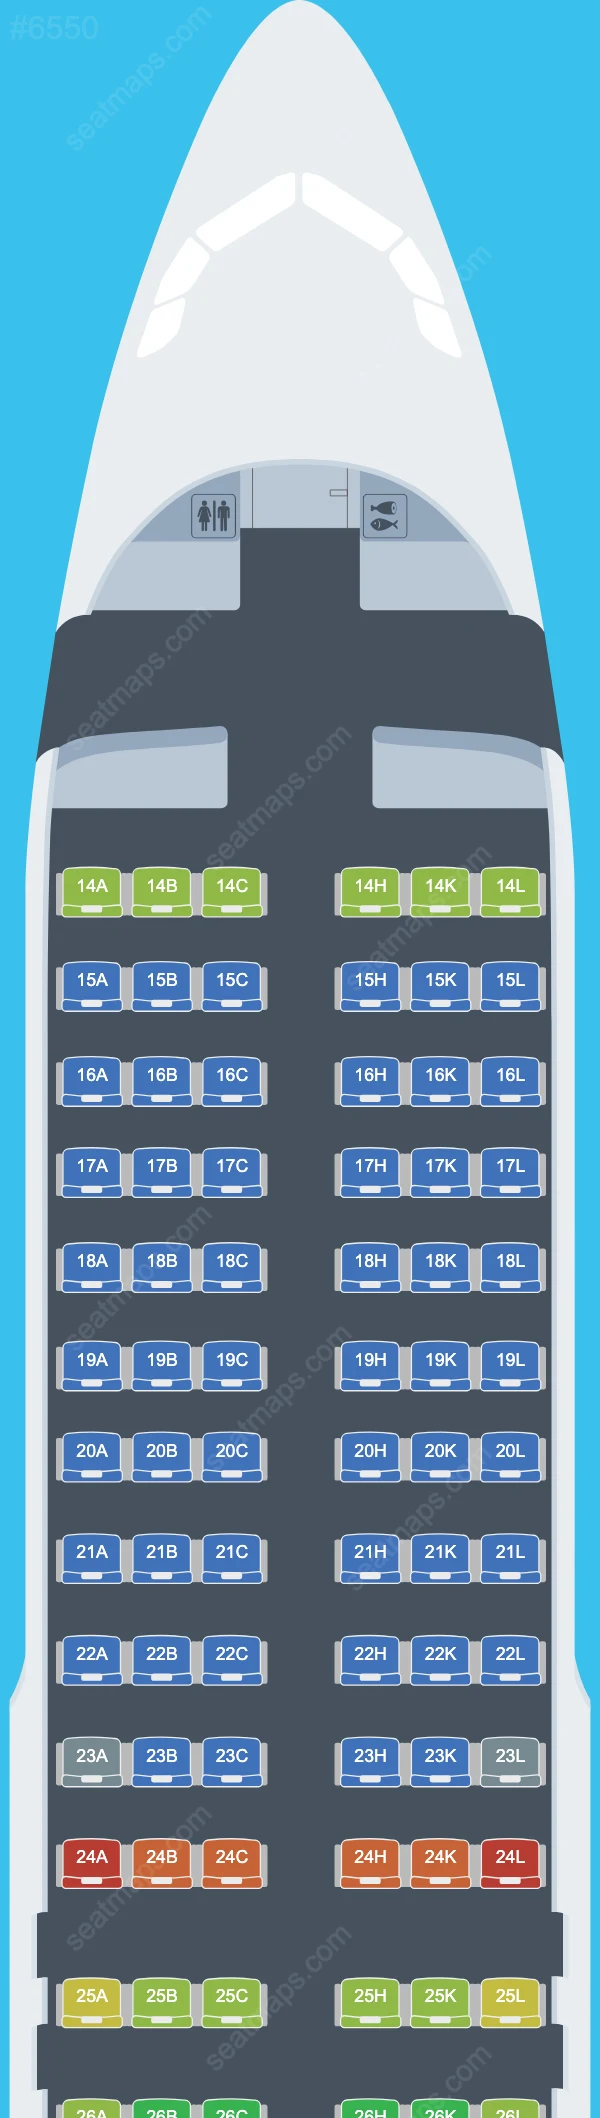 AZAL Azerbaijan Airlines Airbus A320 Seat Maps A320-200 V.2